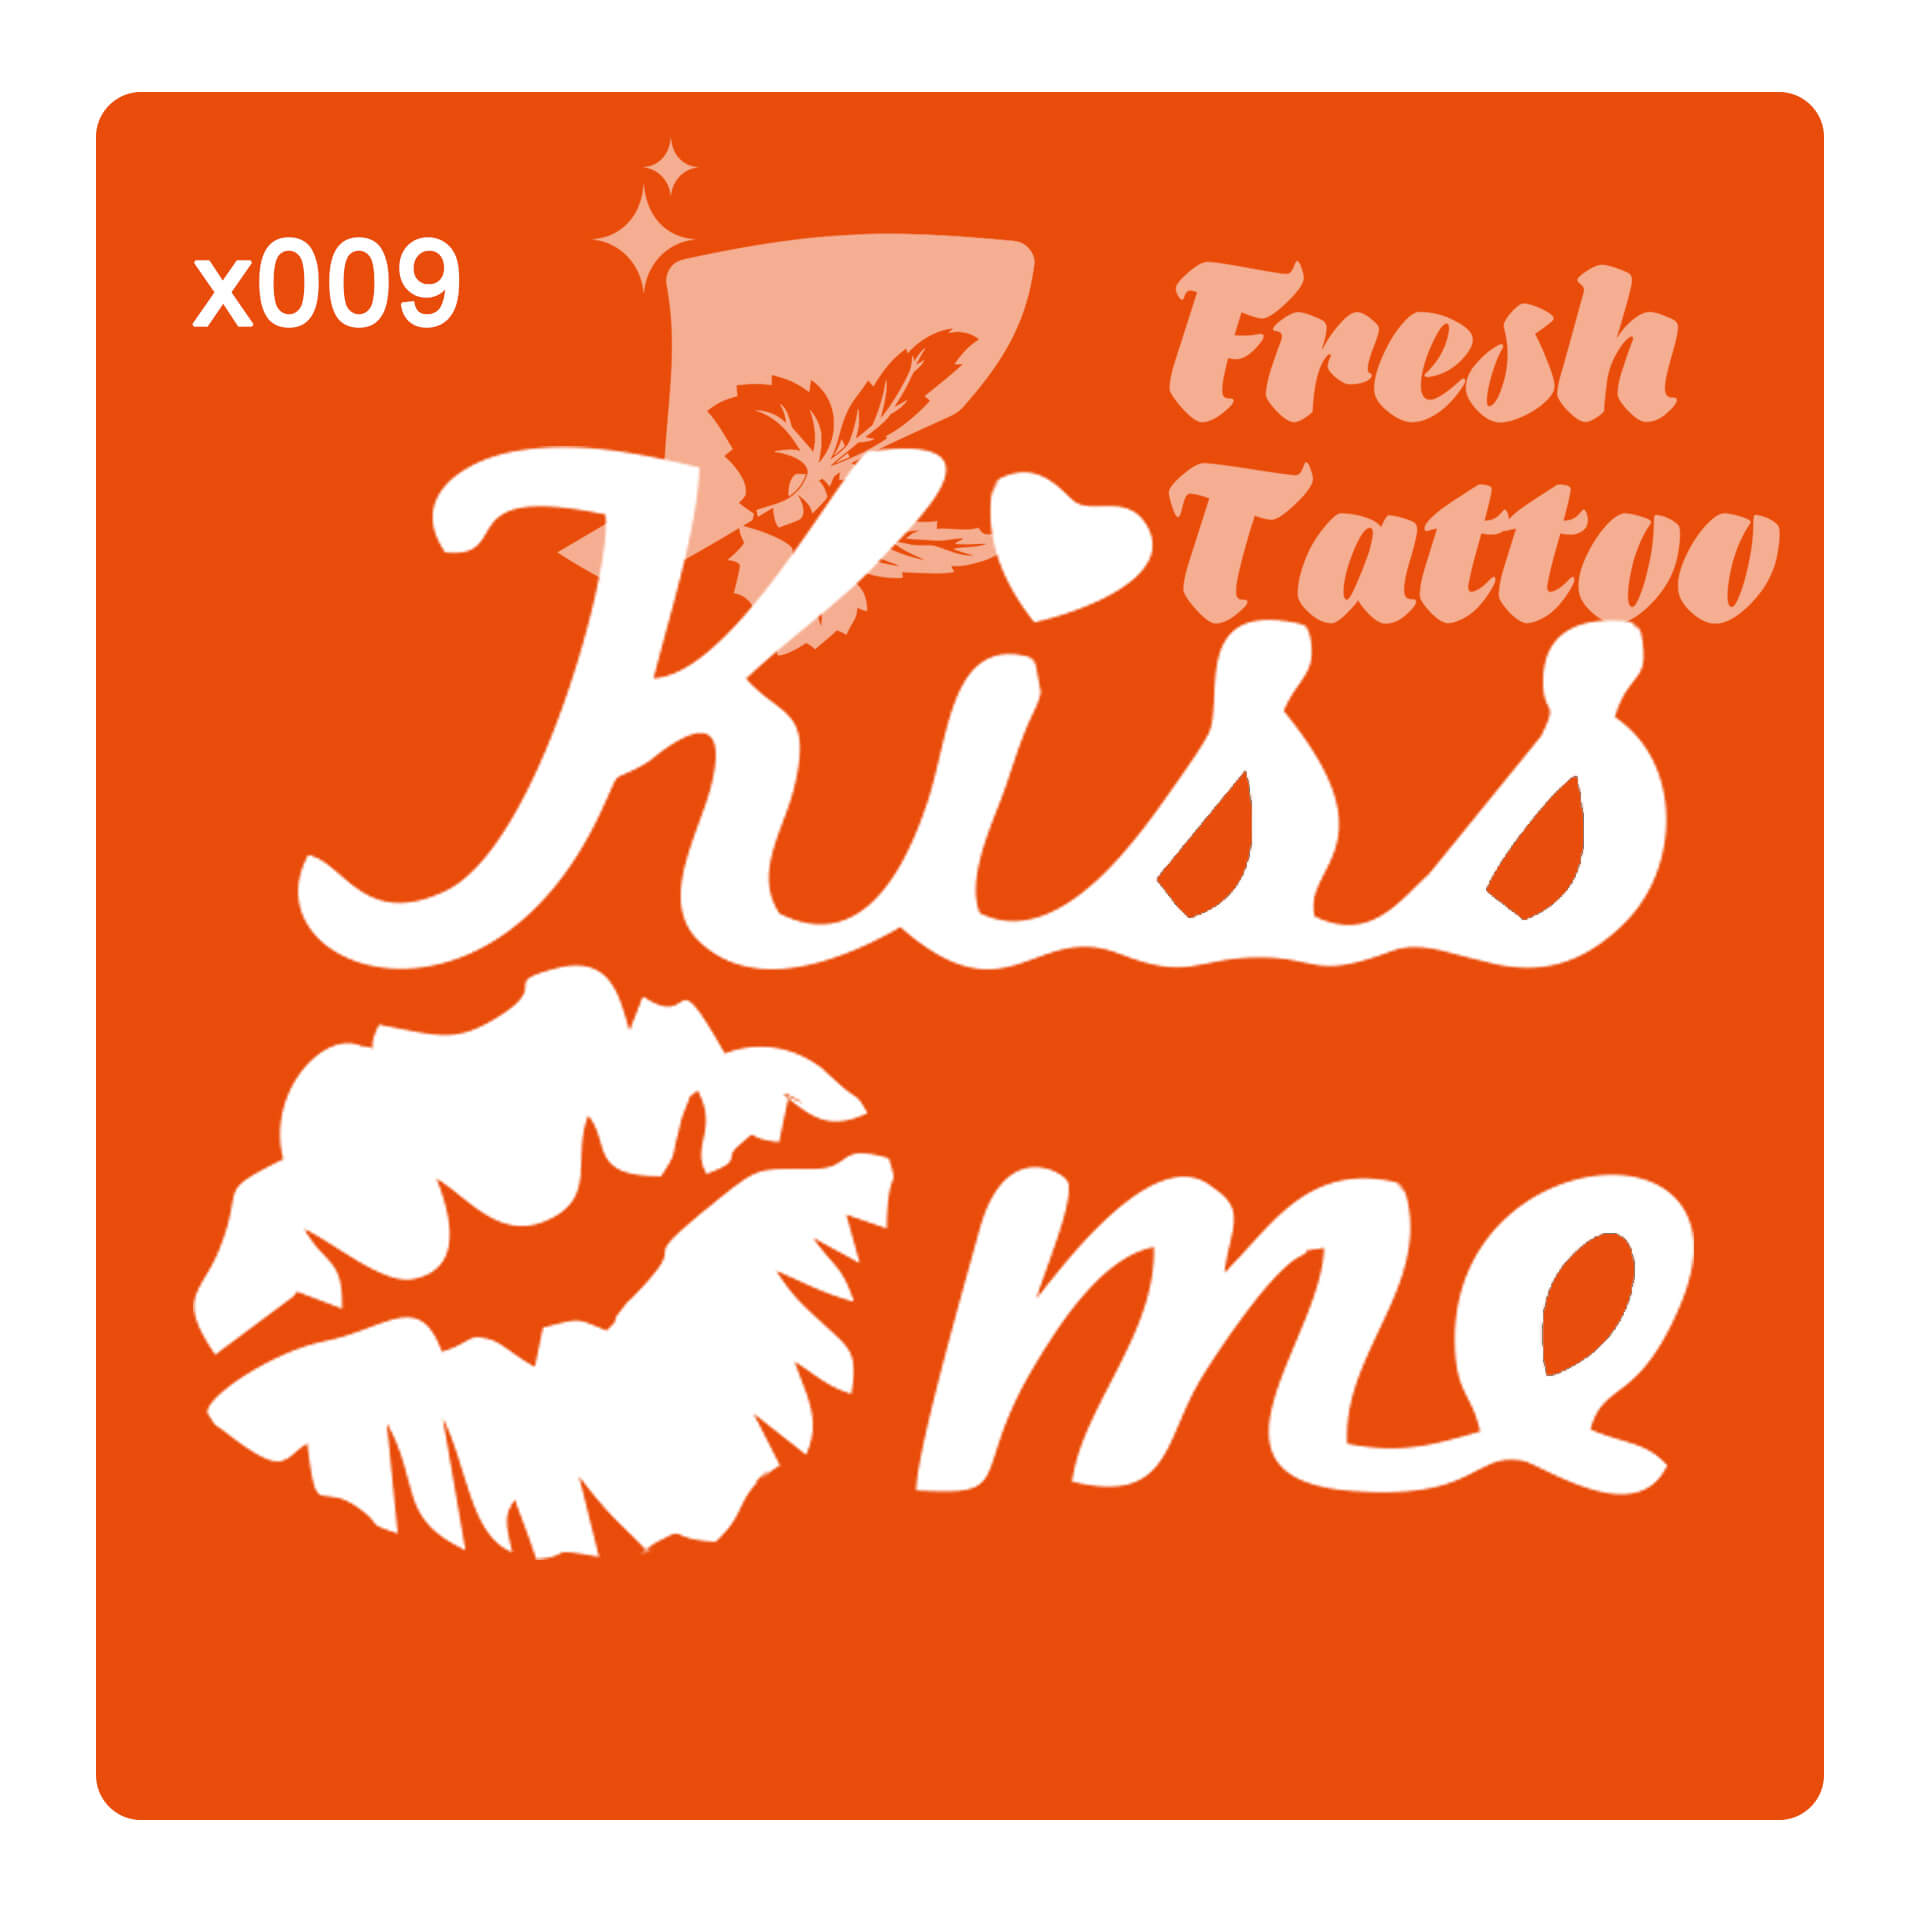 Kiss me x009  